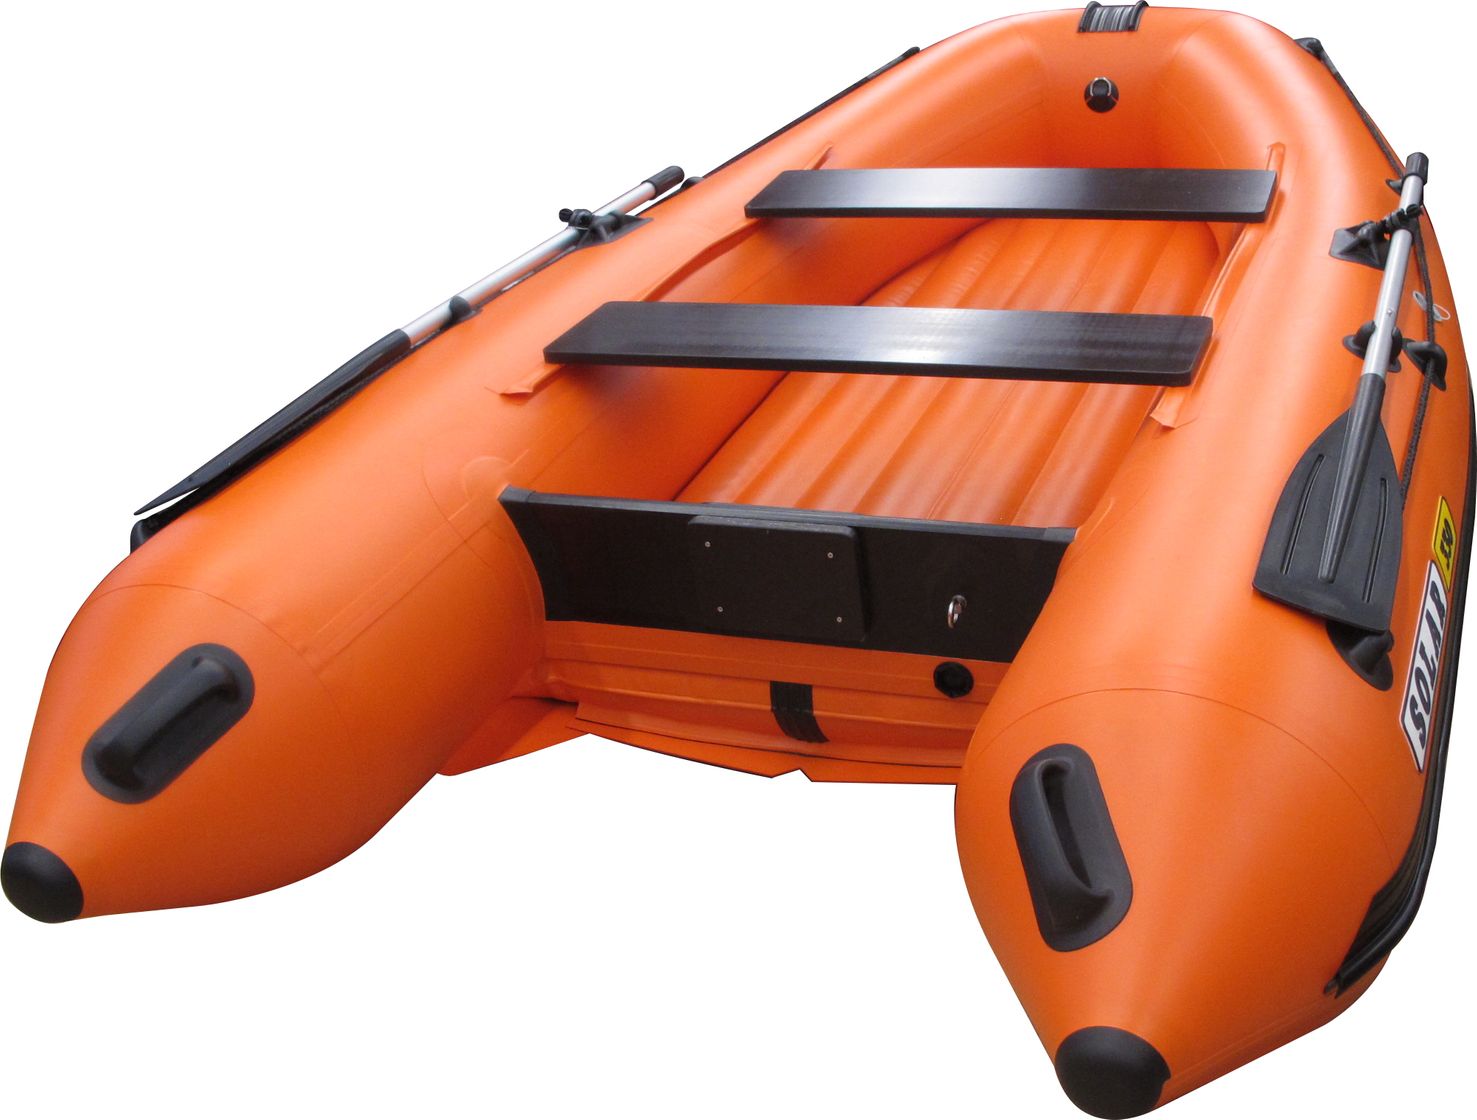 Надувная лодка ПВХ SOLAR-330 К (Оптима), оранжевый SLR330k_opt_orange